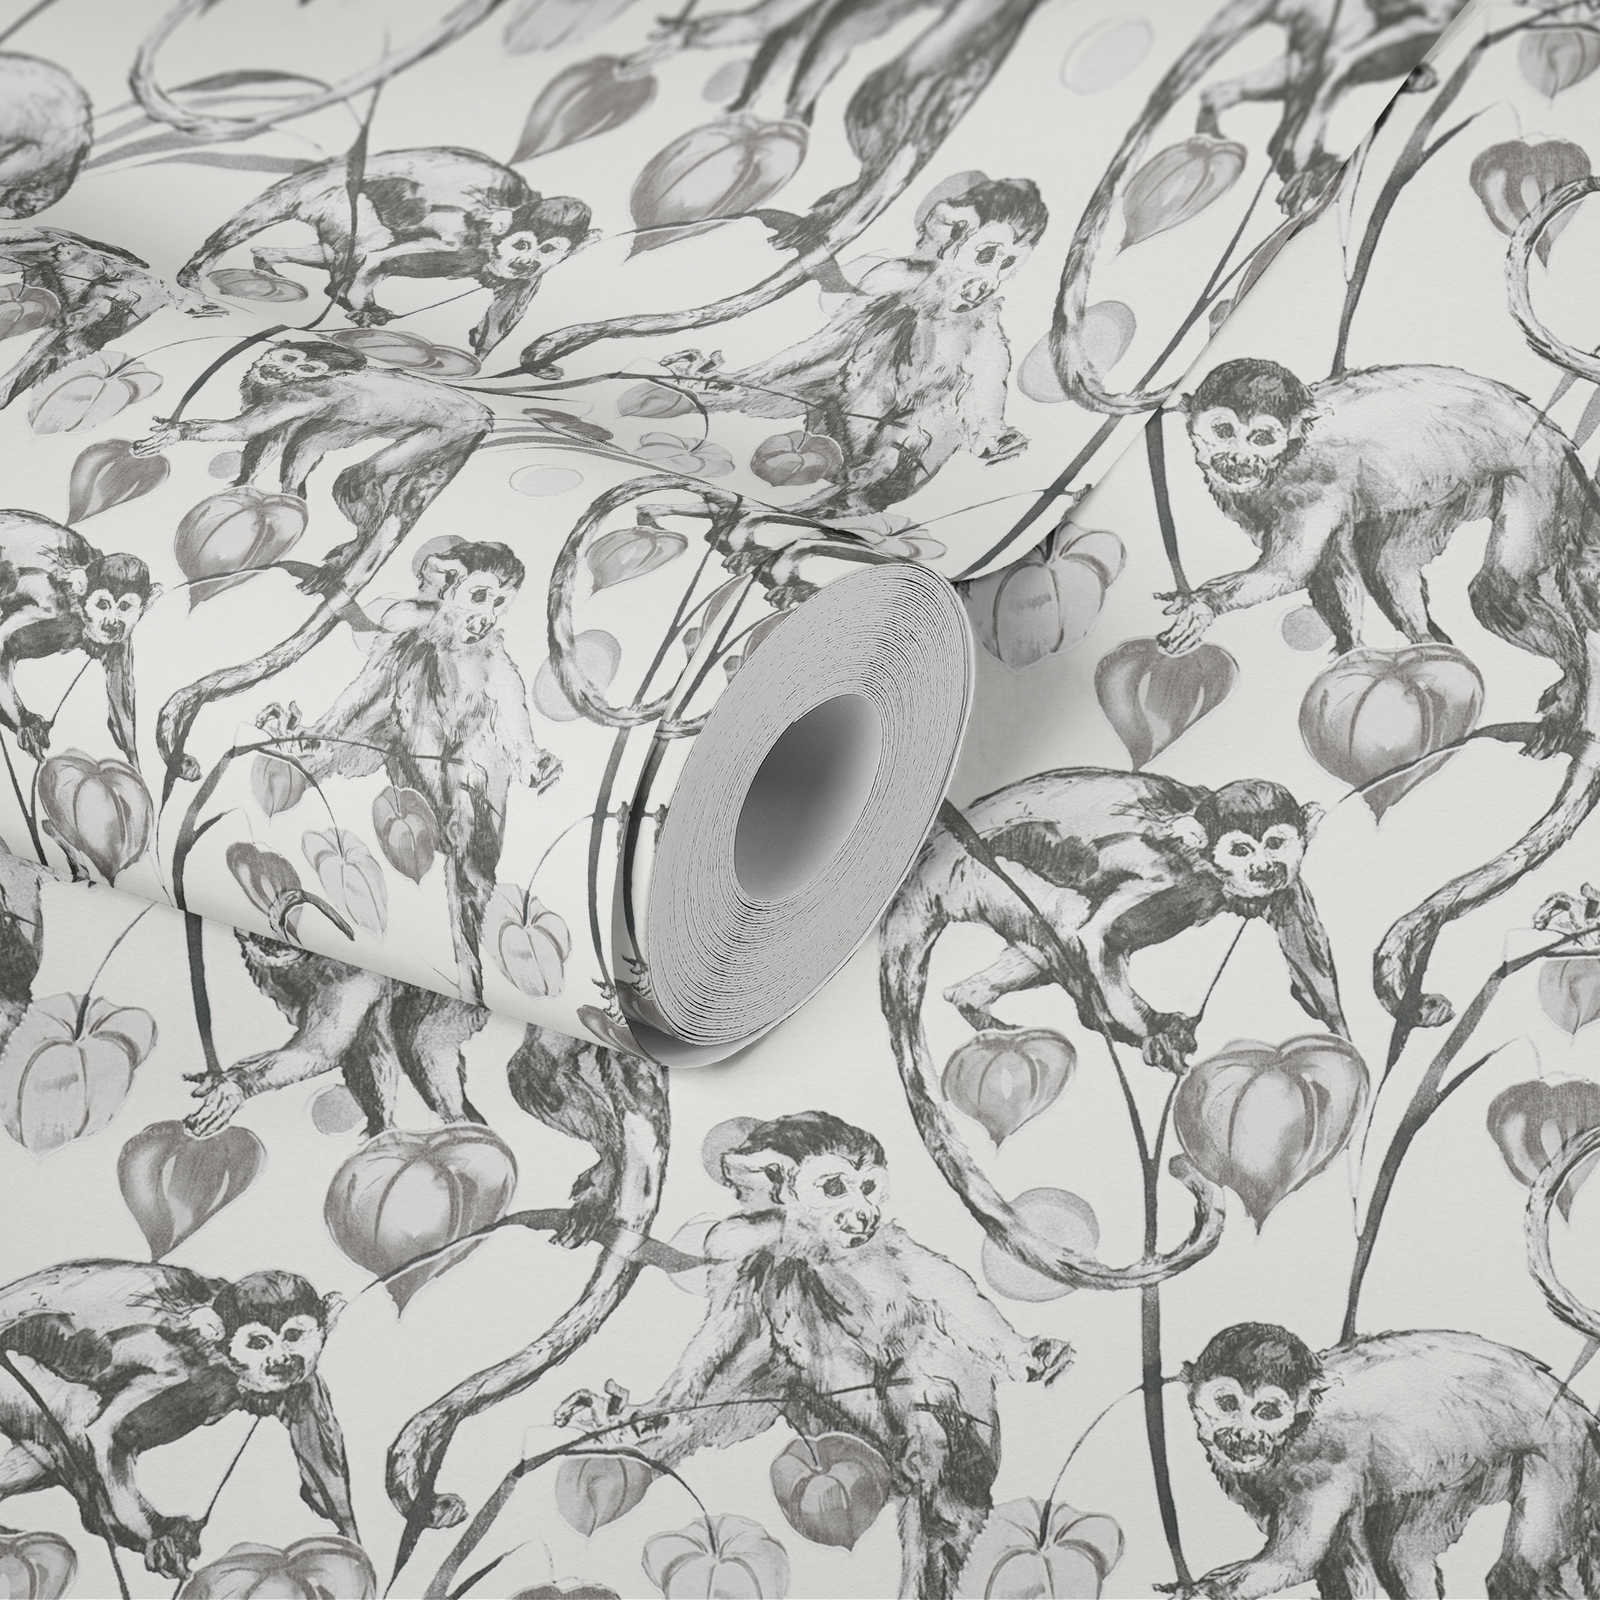             Papel pintado no tejido MICHALSKY con motivos de monos en blanco y negro
        